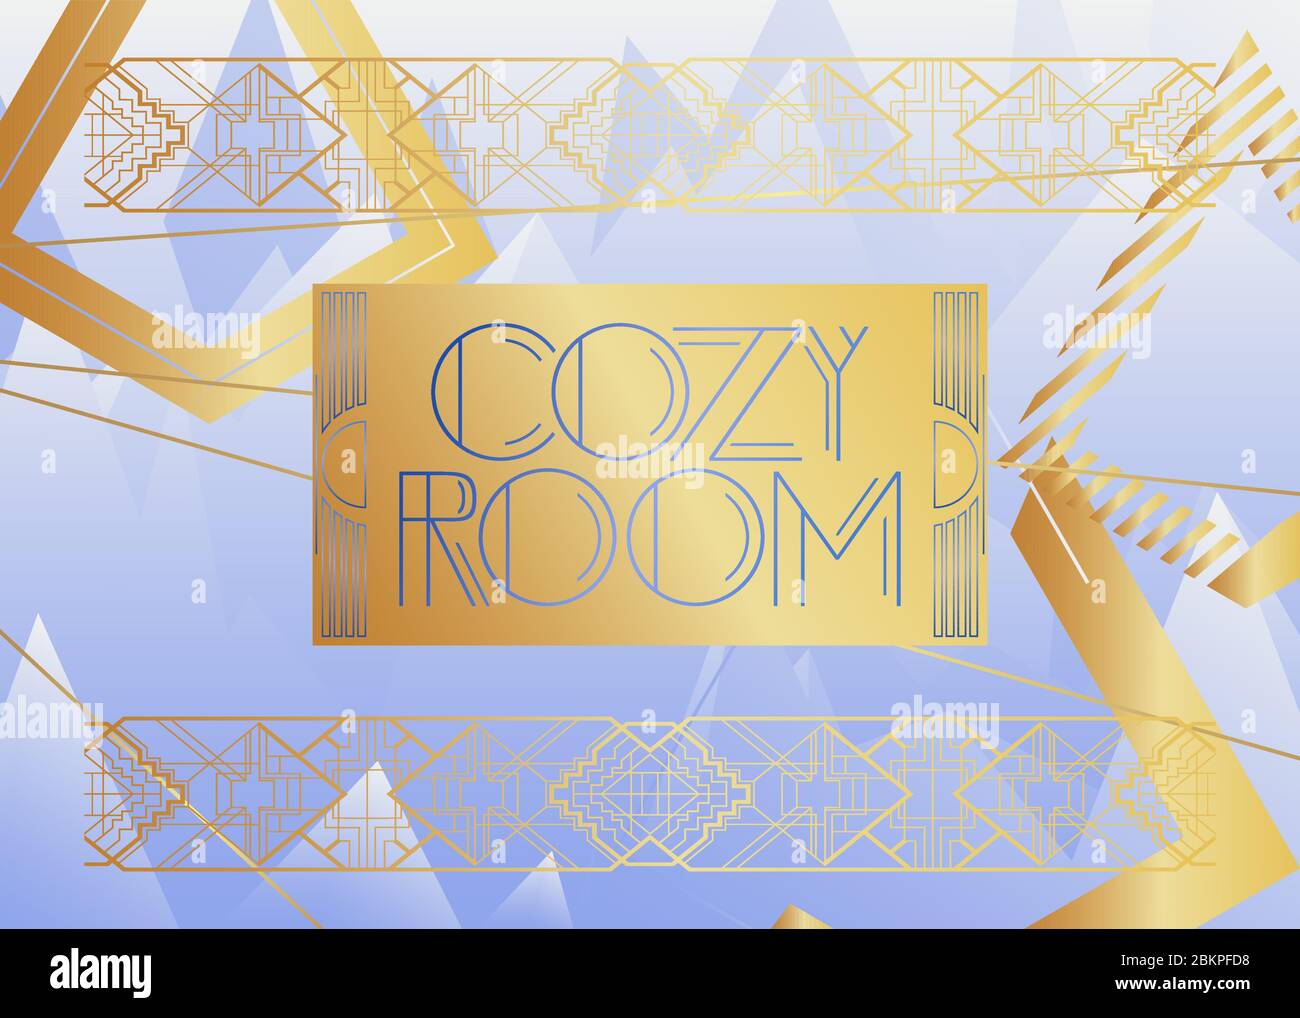 Art Deco Cosy Room text. Biglietto di auguri decorativo, cartello con lettere d'epoca. Illustrazione Vettoriale